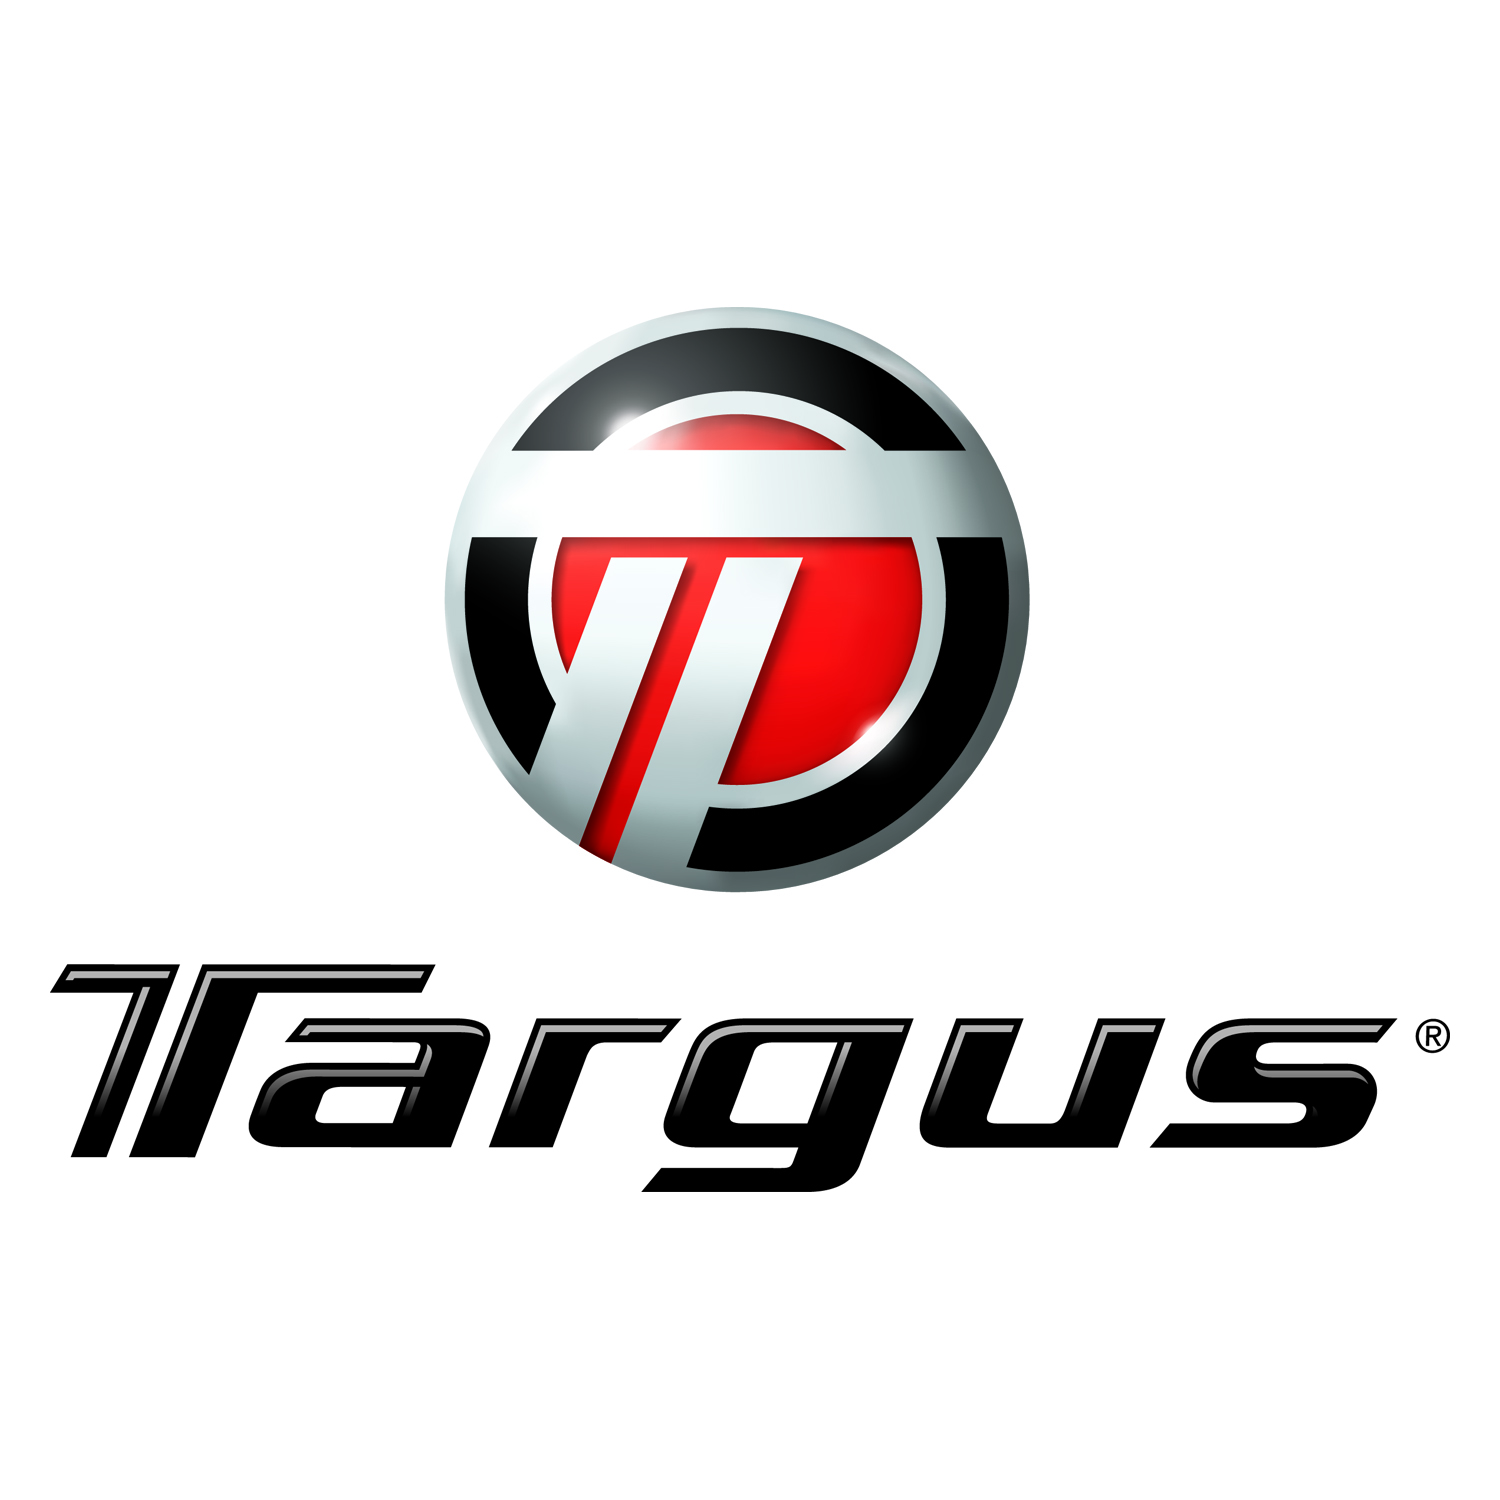 Targus Logo.jpg